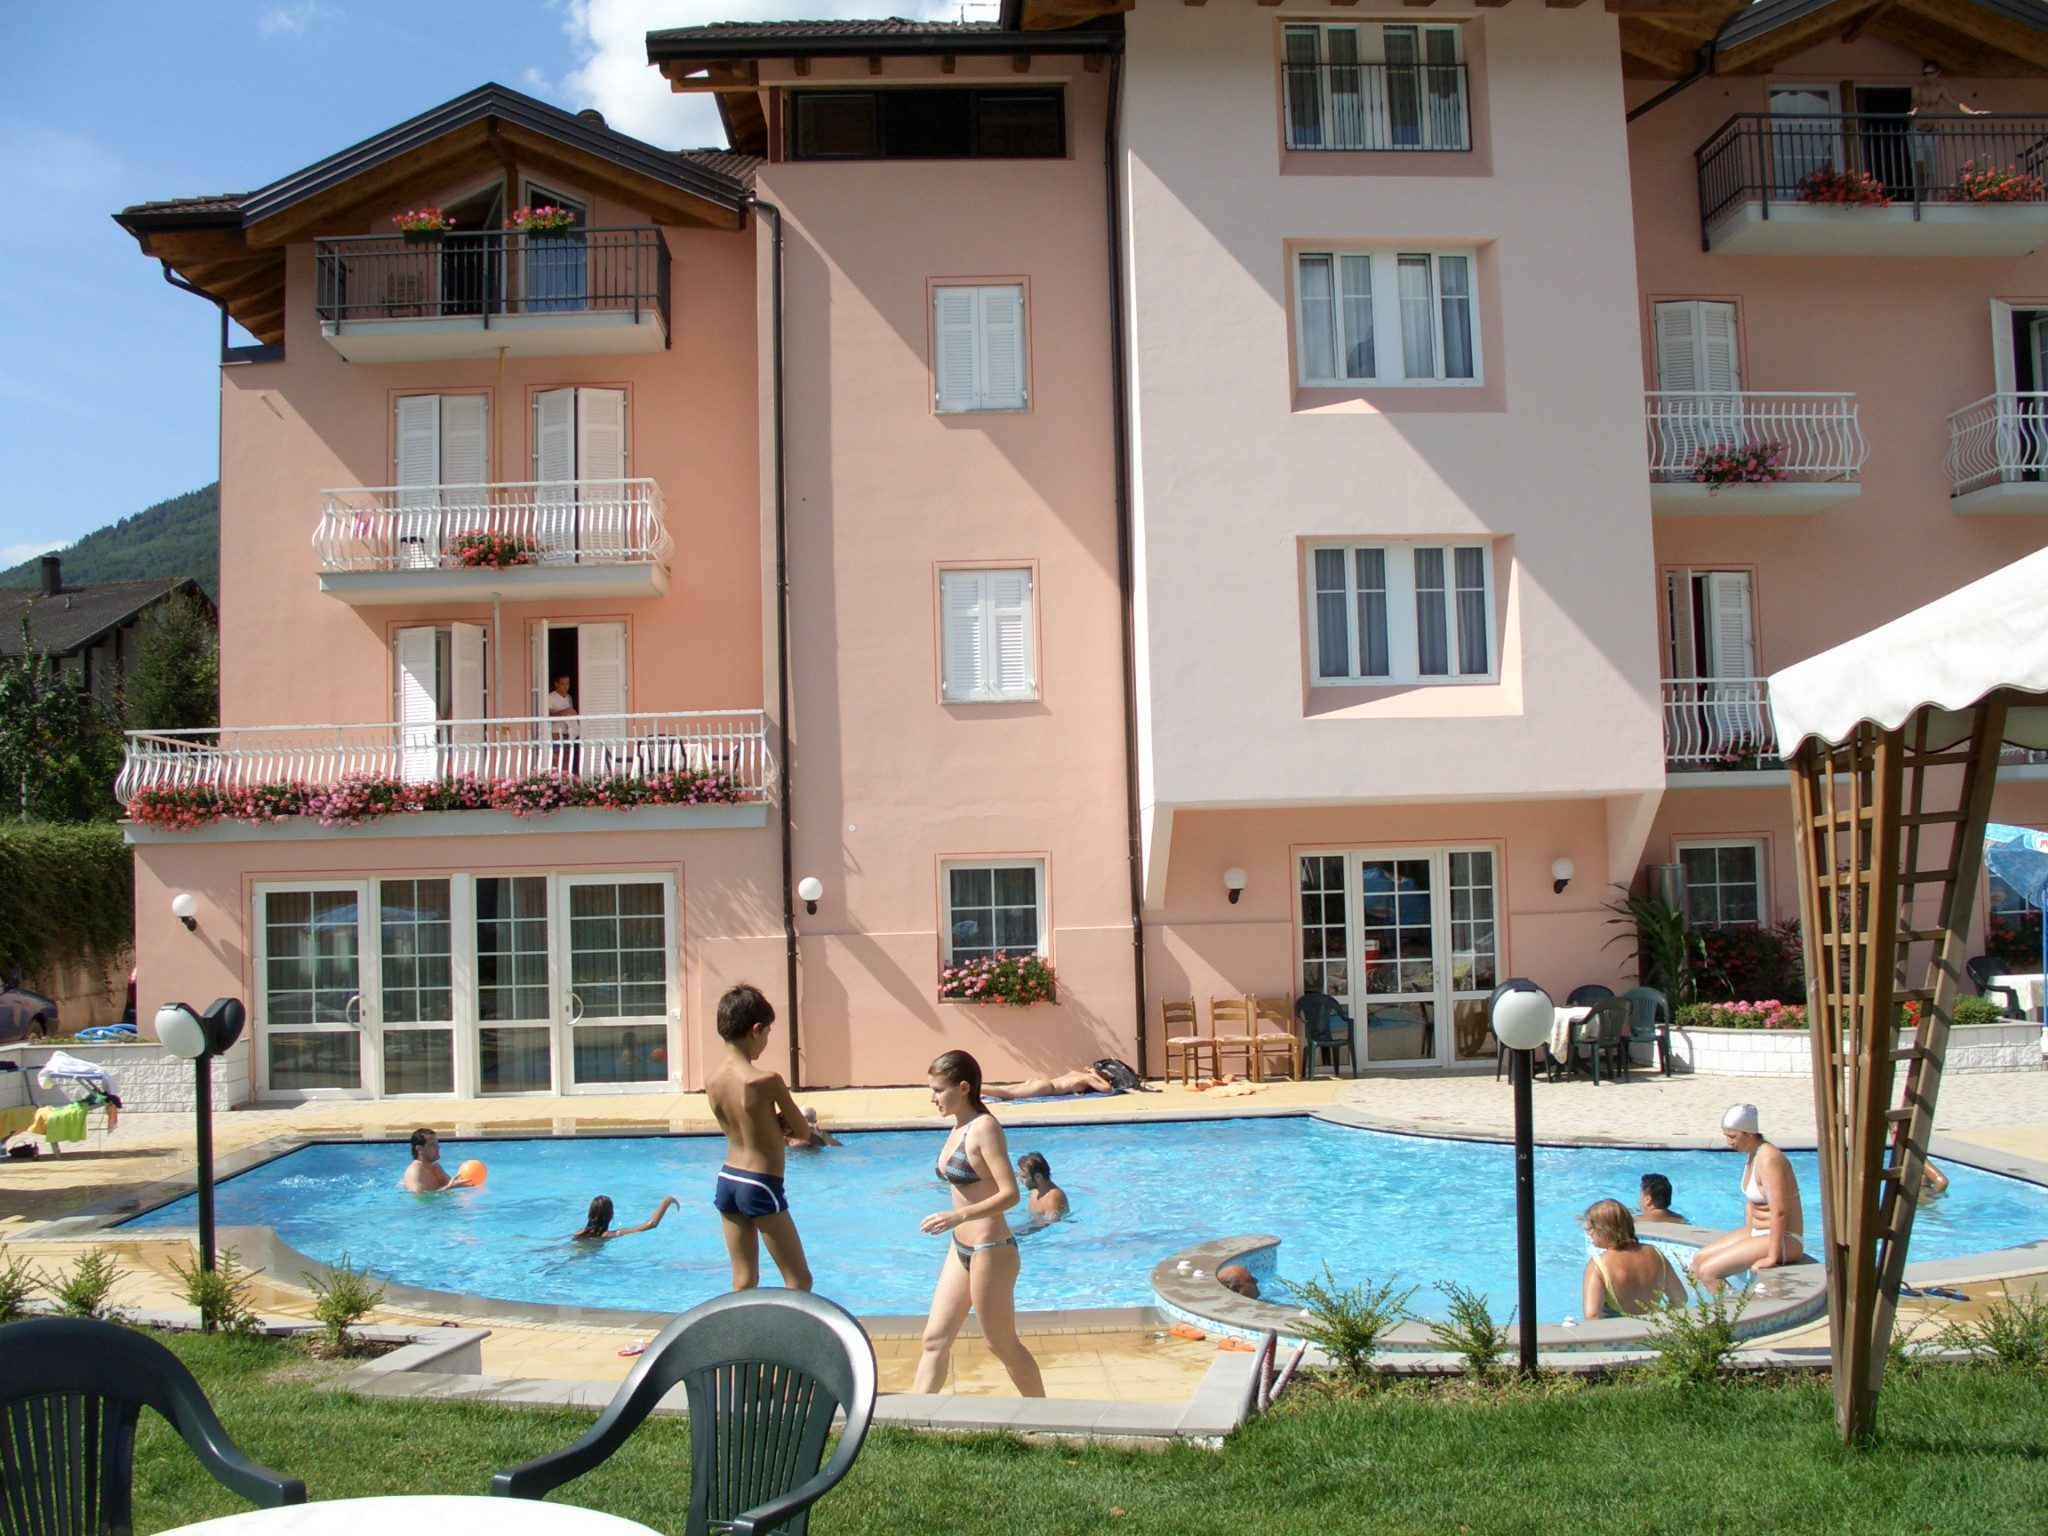 La vacanza ideale per la famiglia in Trentino